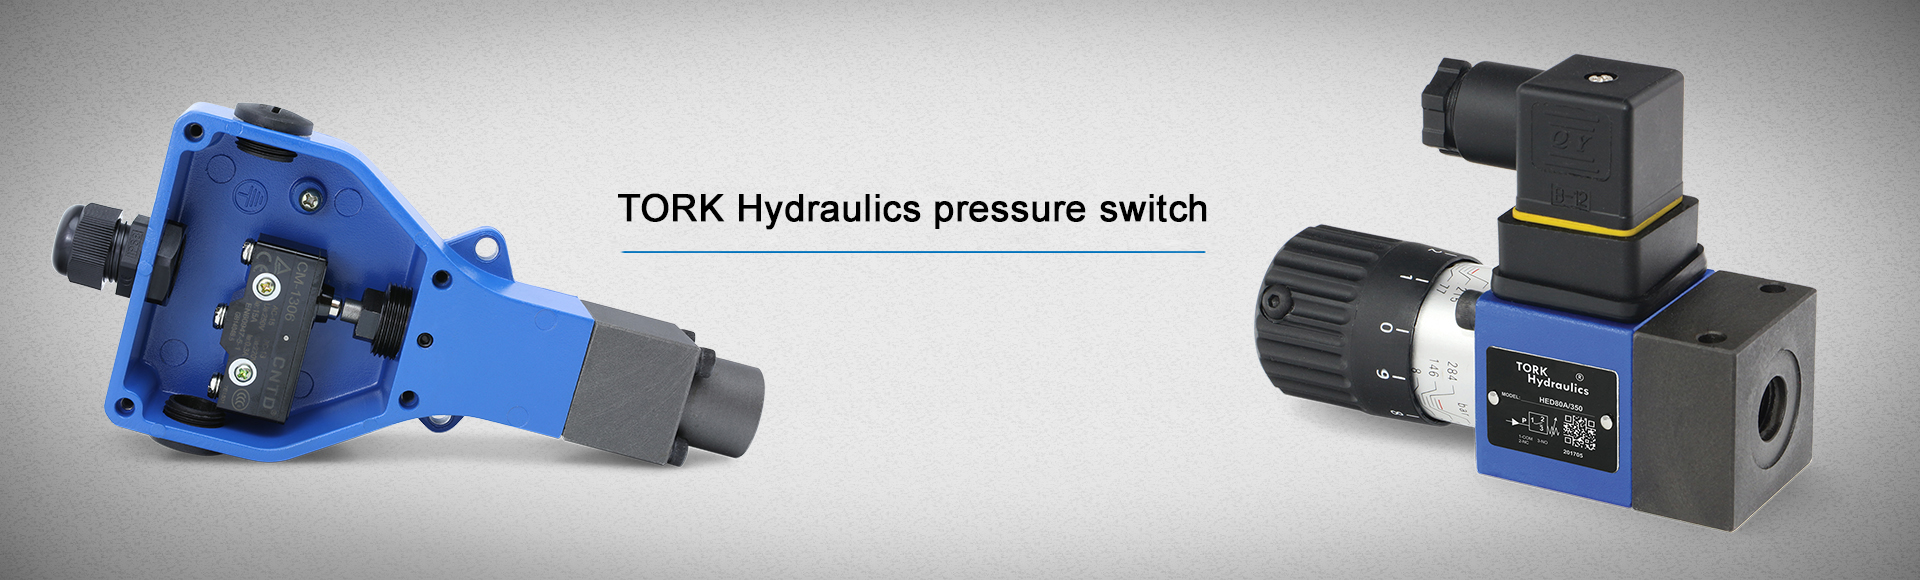 Pressure switch - Hydraulic pressure switch